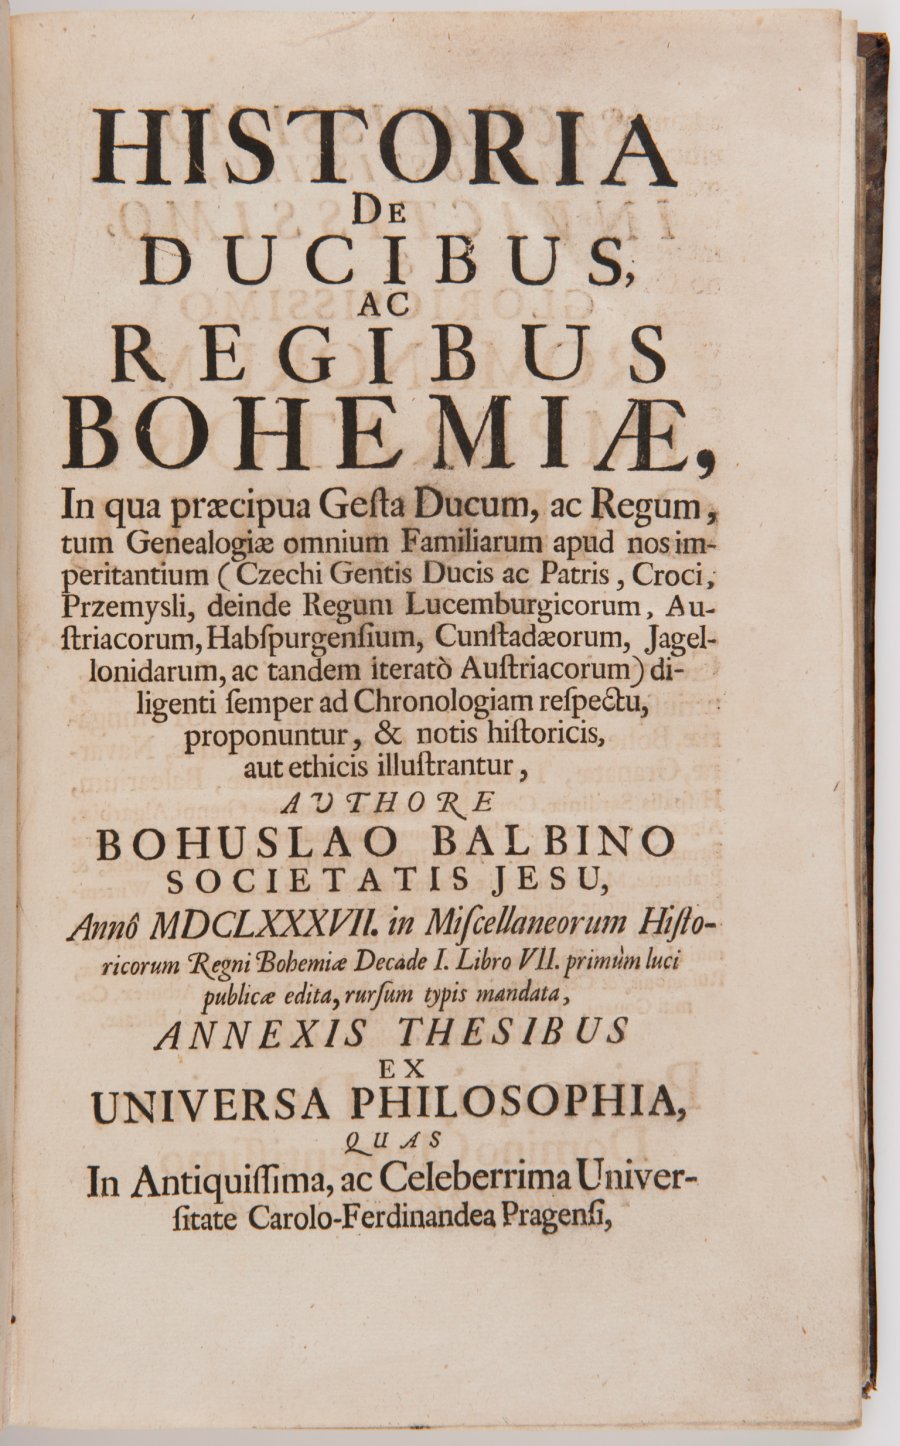 HISTORIA DE DUCIBUS, AC REGIBUS BOHEMIAE (History of the Duchy and Kingdom of Bohemia)